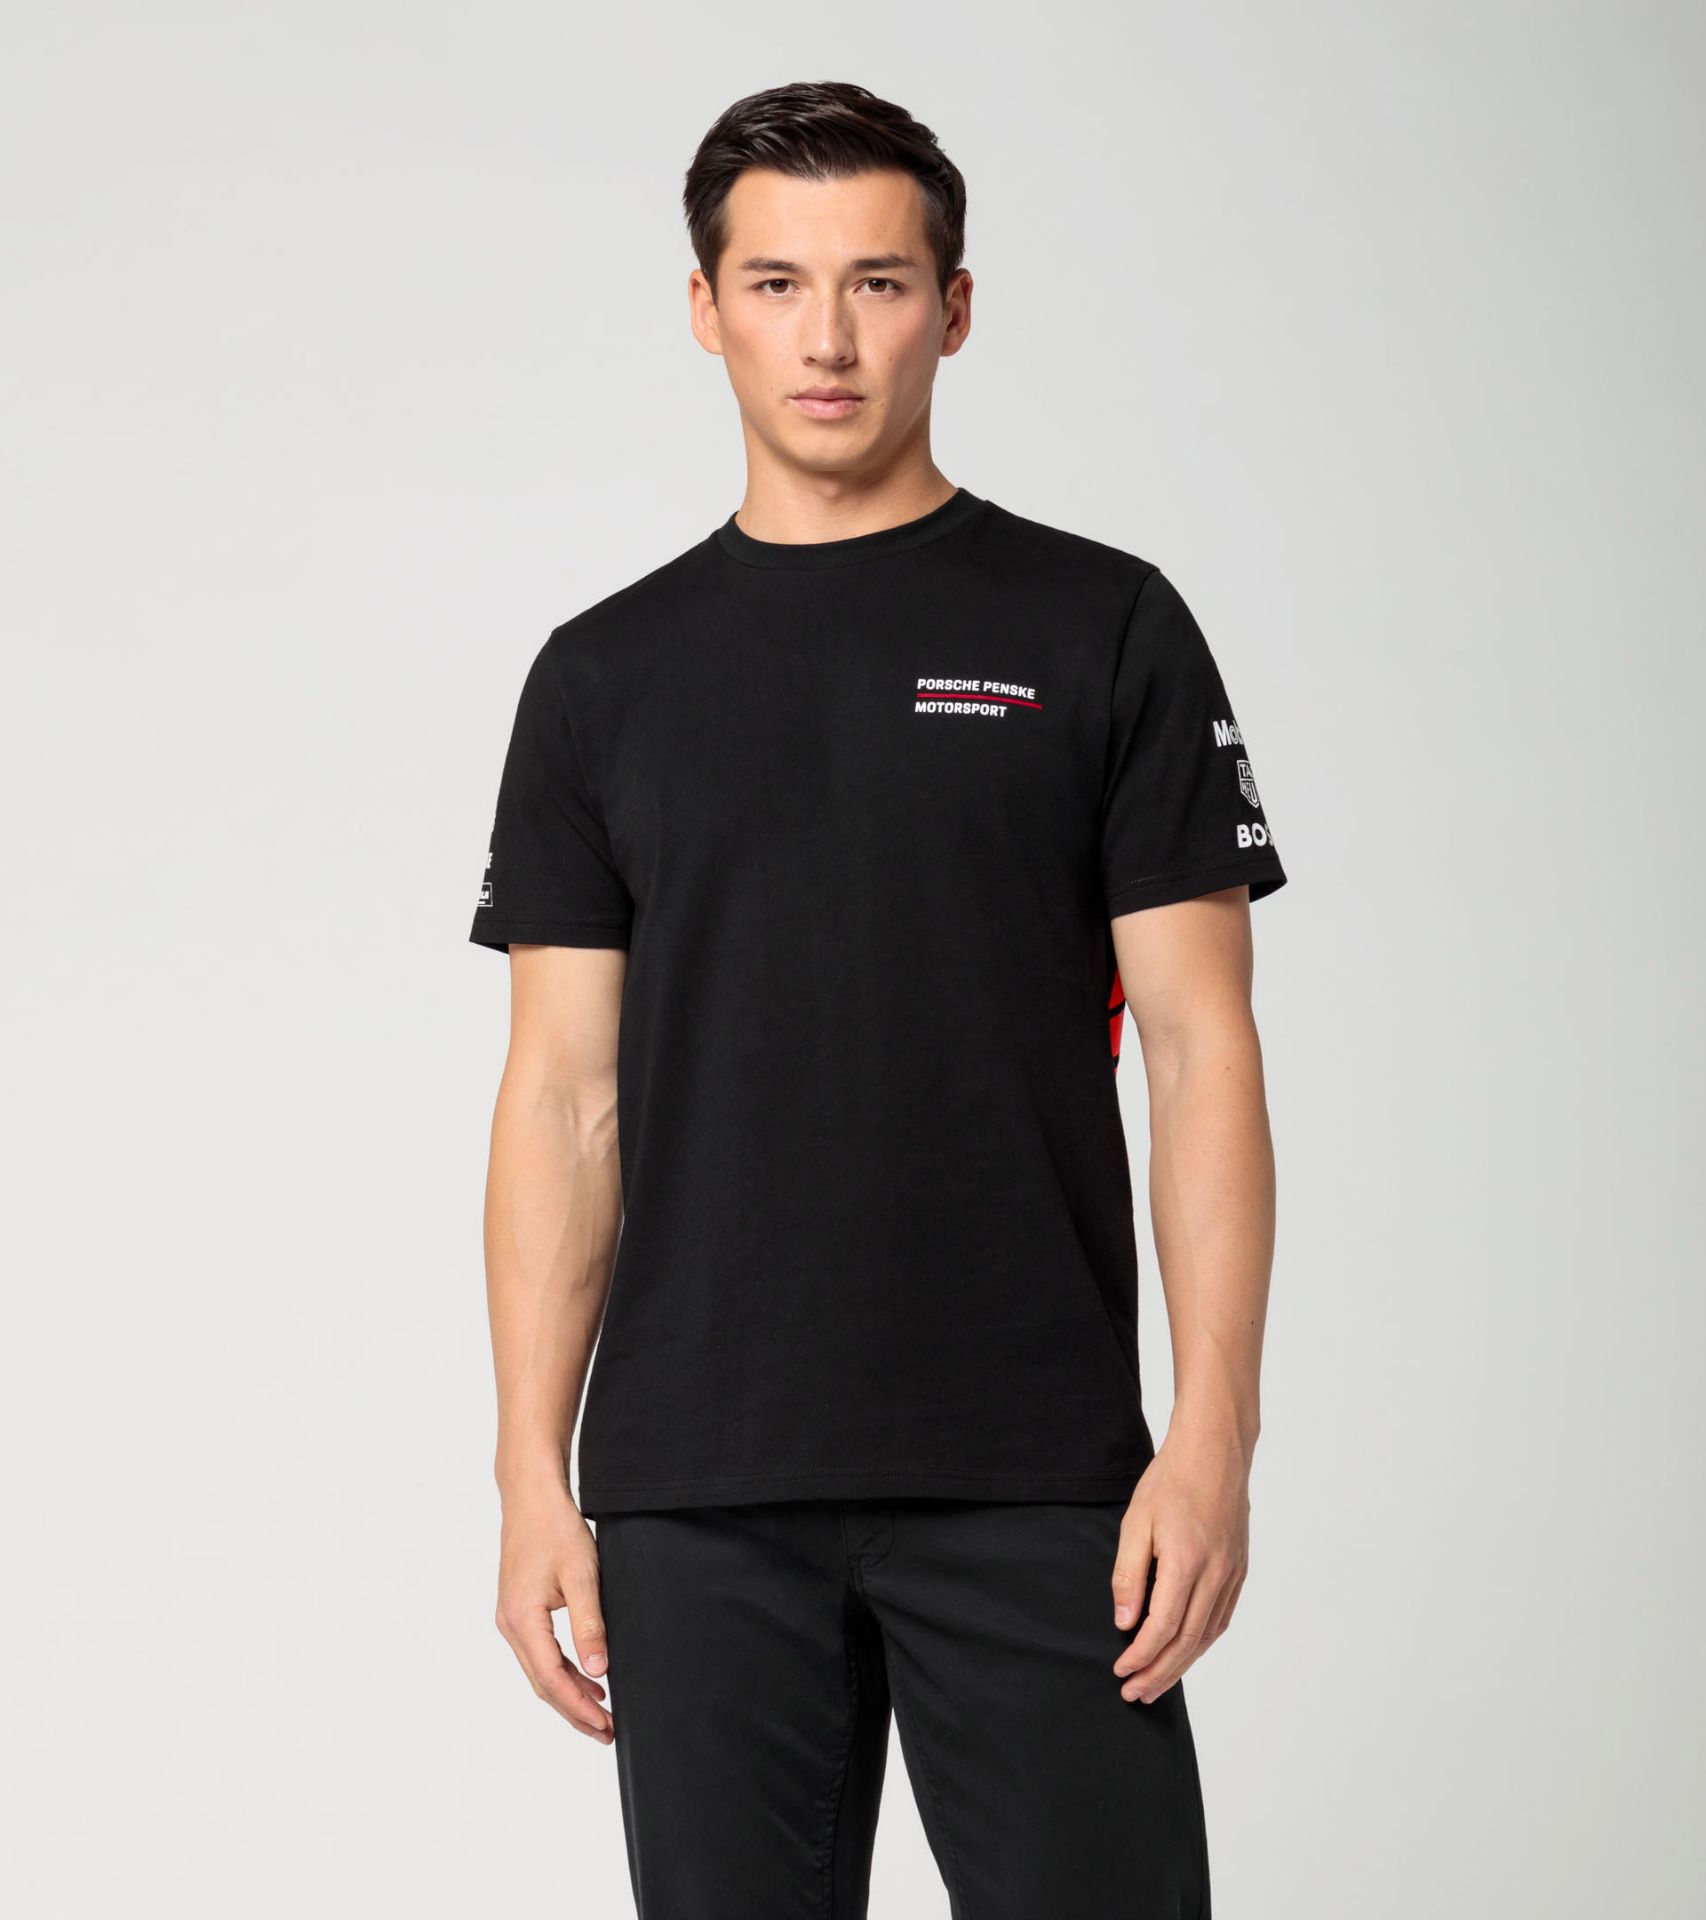 Shop Porsche Lifestyle | Porsche Singapore | T-Shirt Penske Motorsport